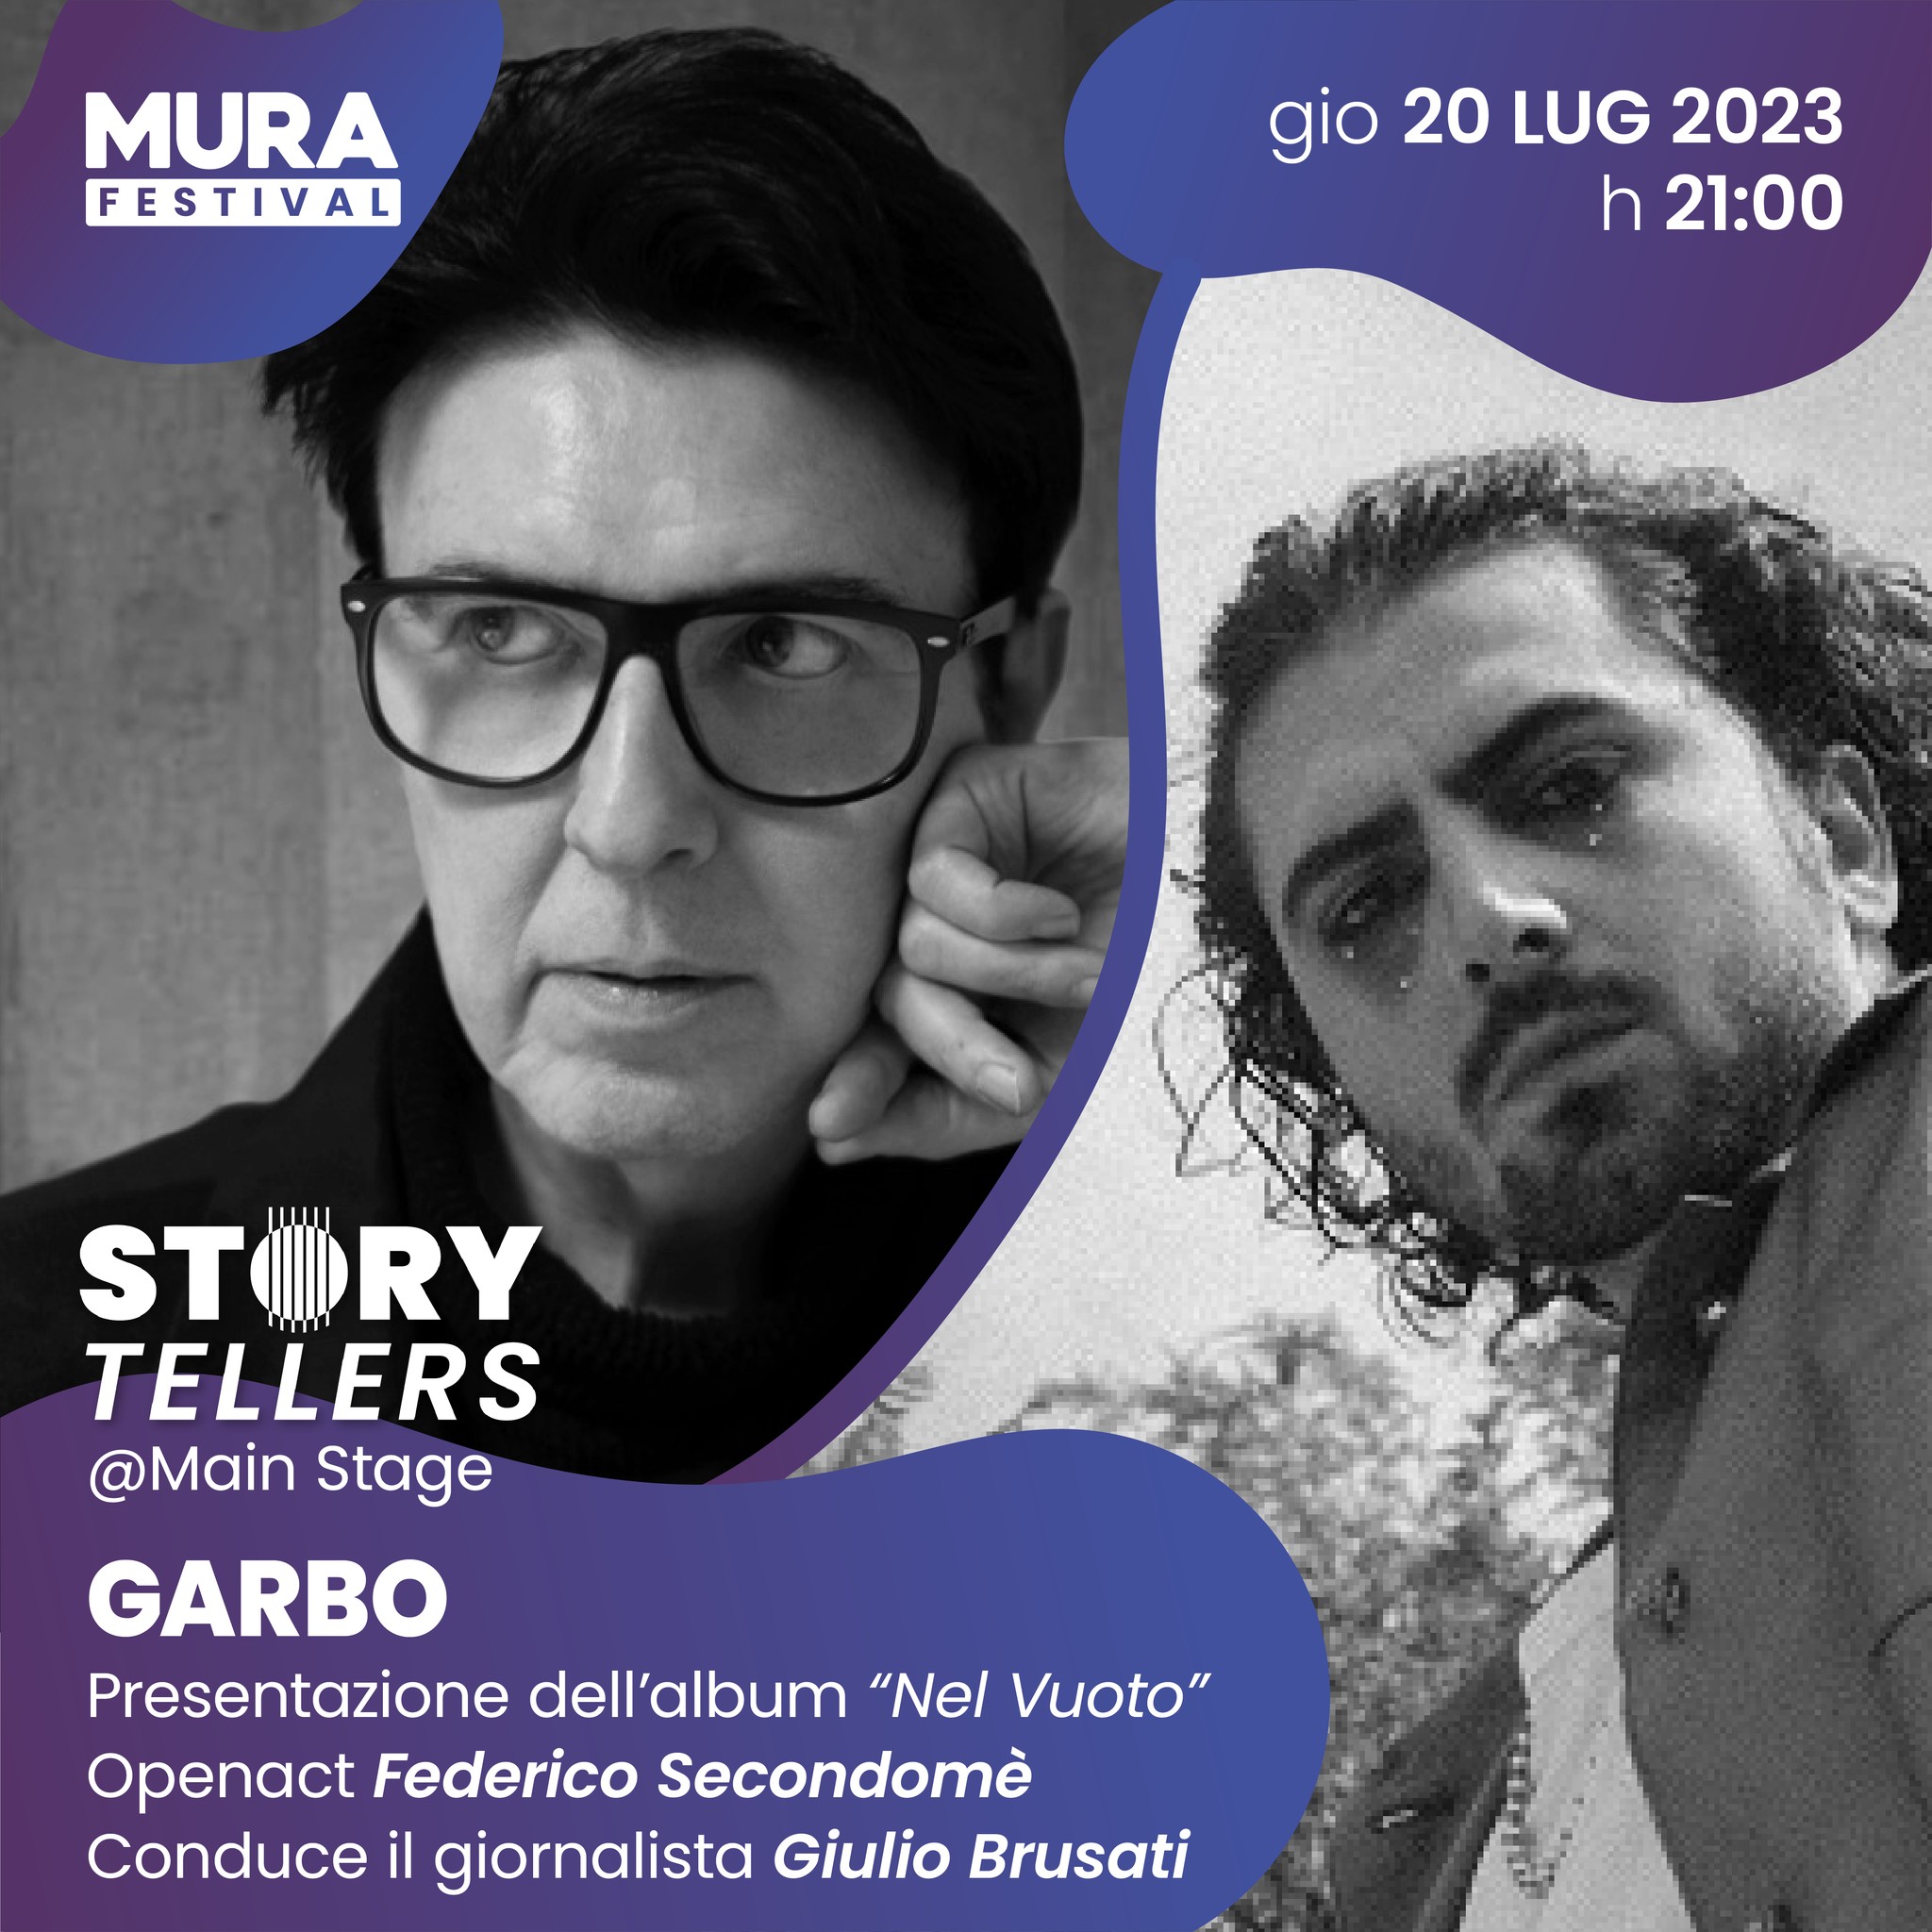 Al “Mura Festival” il terzo appuntamento della rassegna “Storytellers” vede protagonista Garbo, esponente della New Wave Italiana